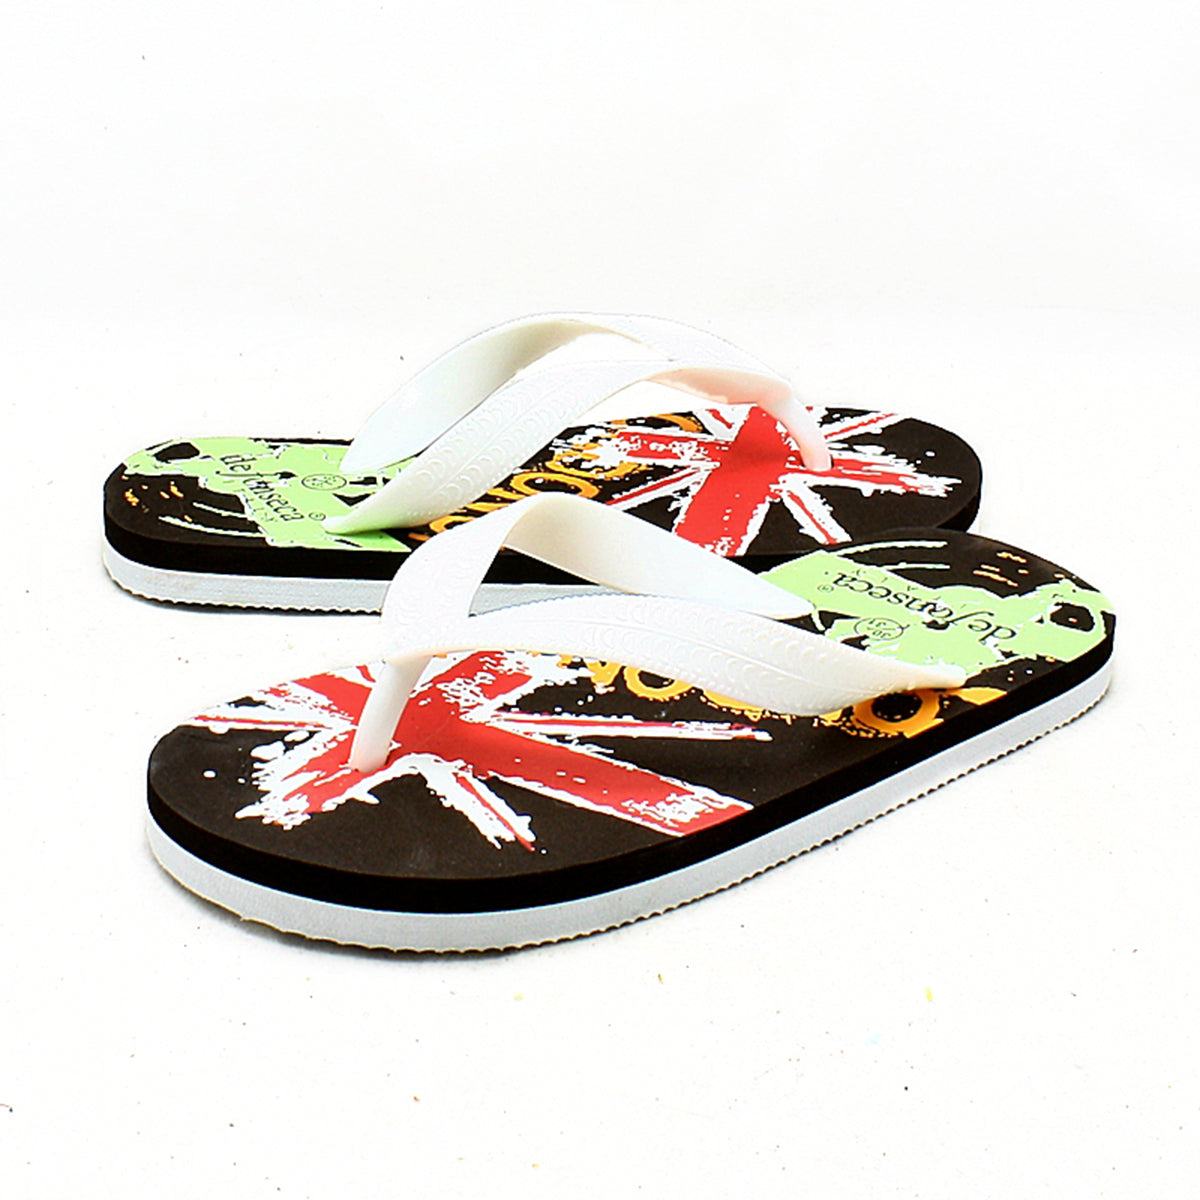 Children's flip flops / beach shoes summer sandals